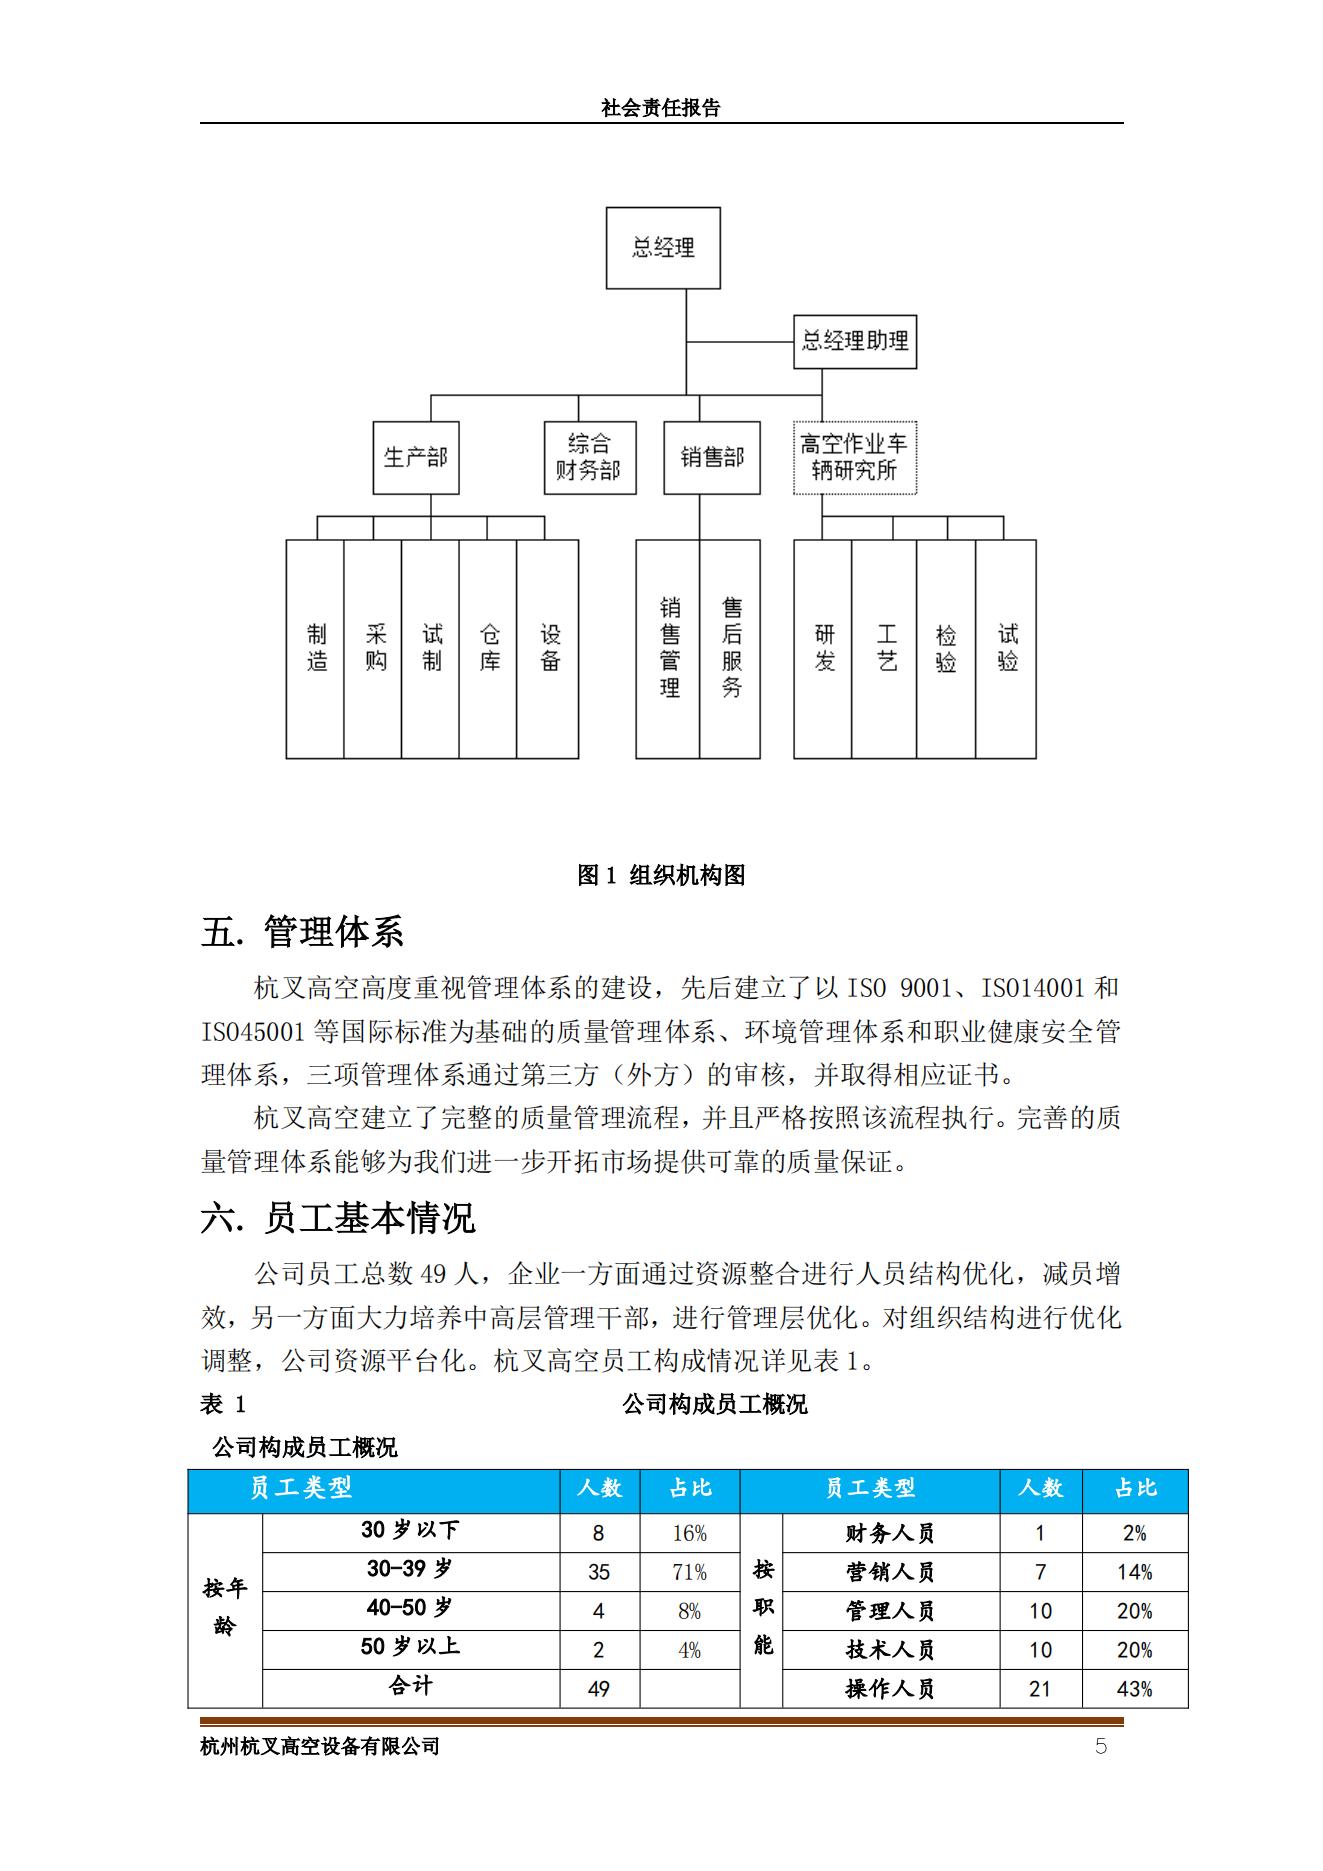 杭州杭叉高空設備2021年社會責任報告(圖5)